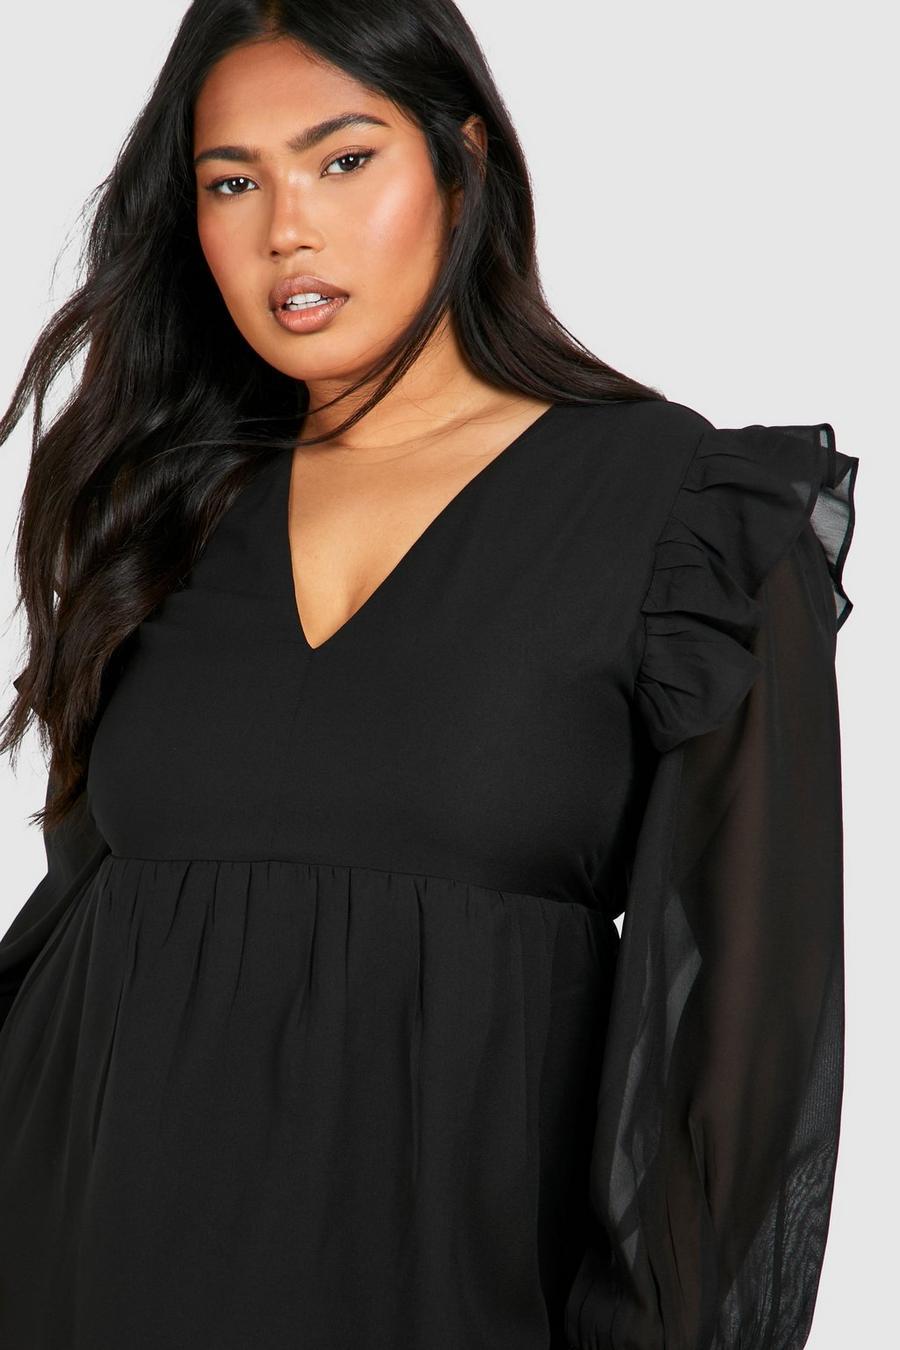 czarna maxi sukienka długi rękaw szyfon